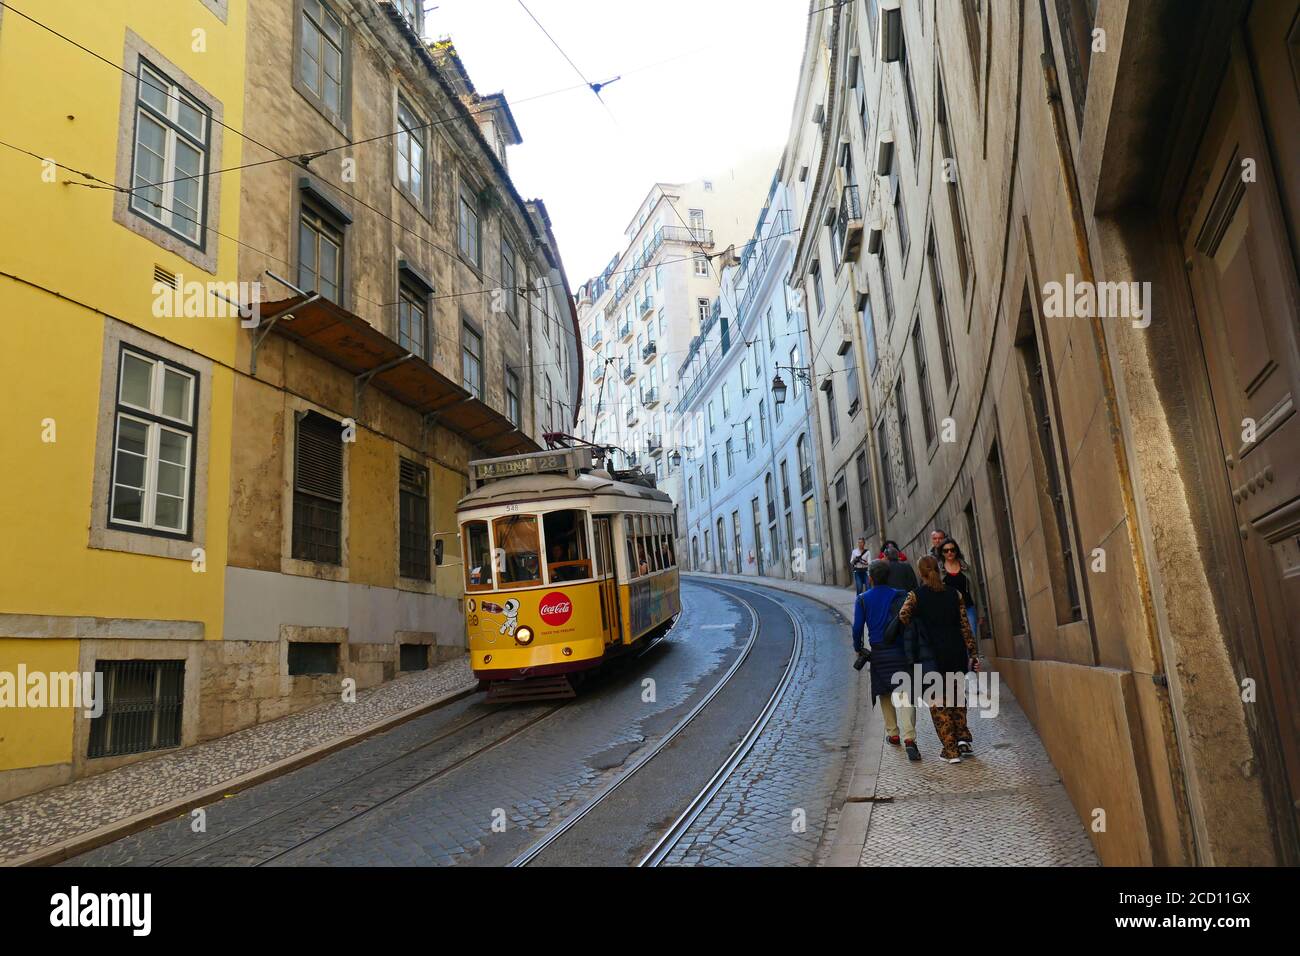 historiische Straßenbahn Nr. 28 in der Altstadt von Lissabon Foto Stock